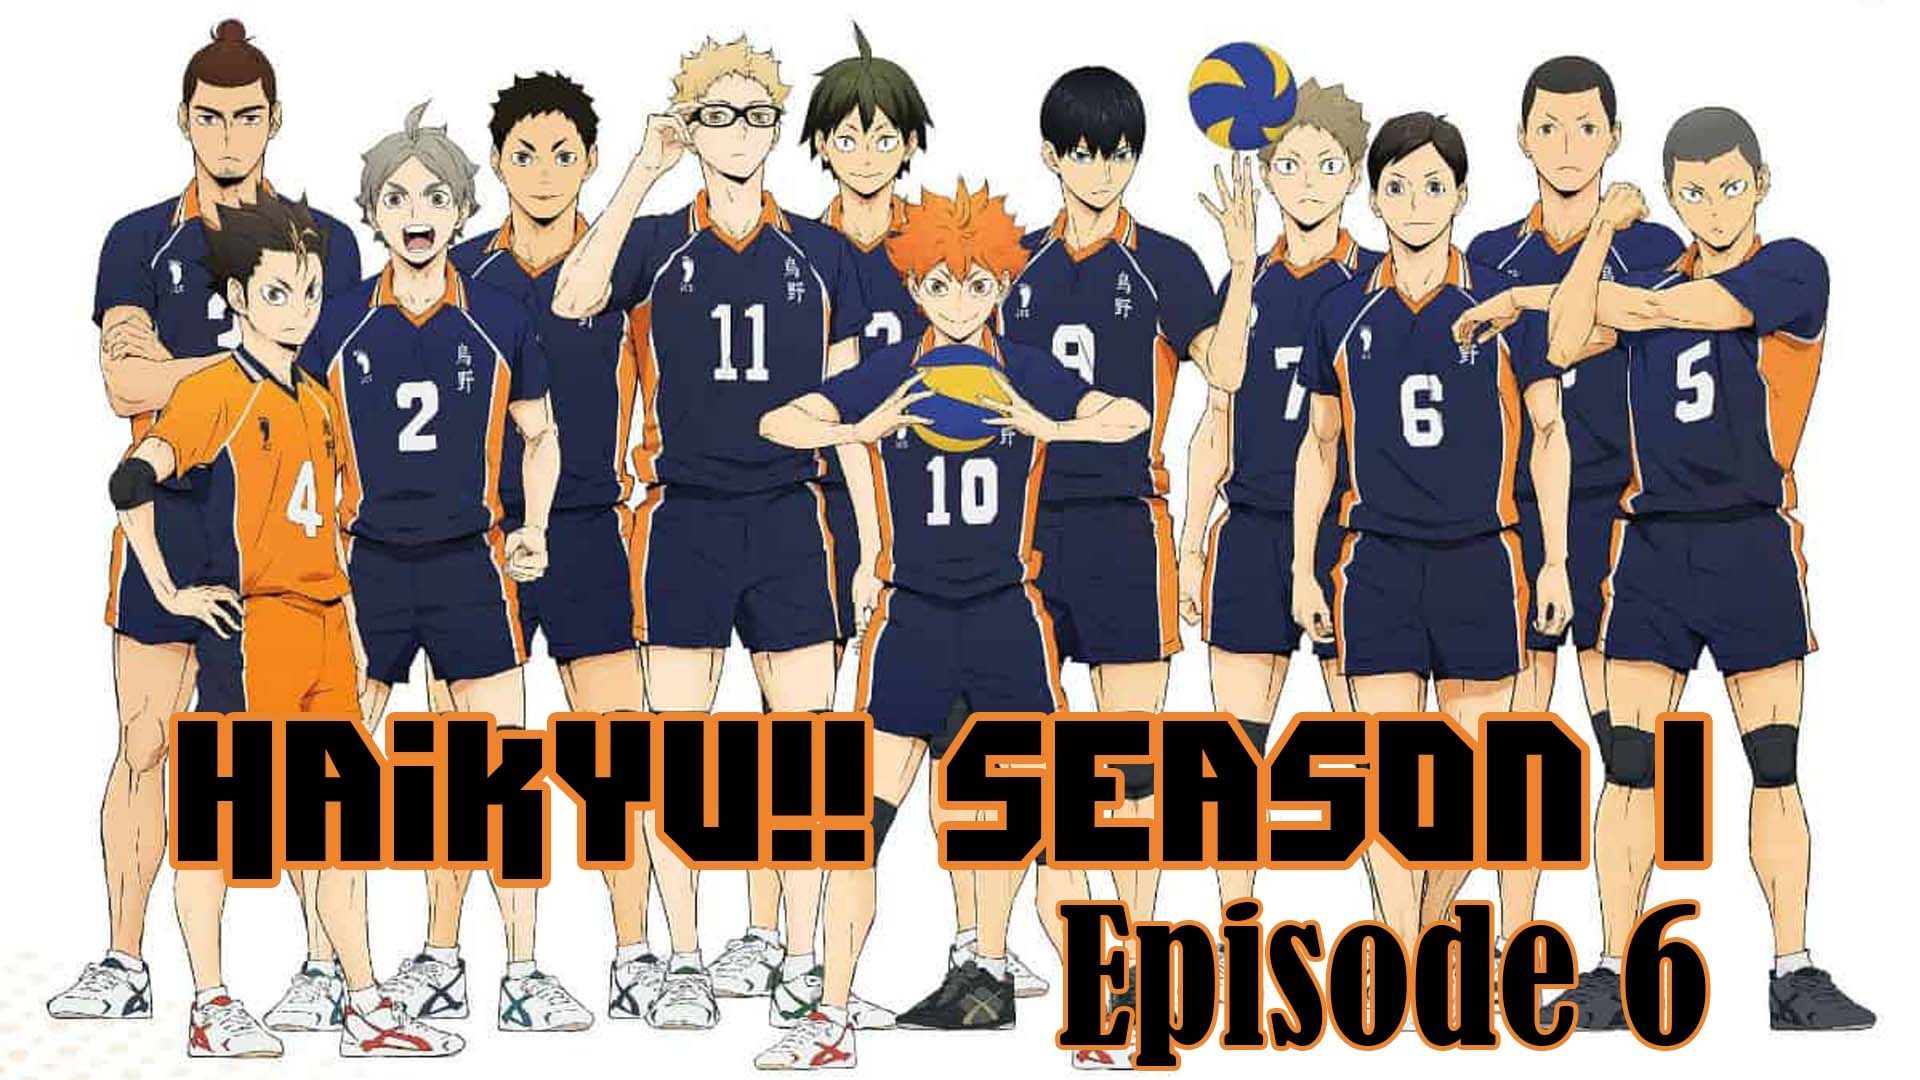 Watch Haikyu!! season 3 episode 6 streaming online